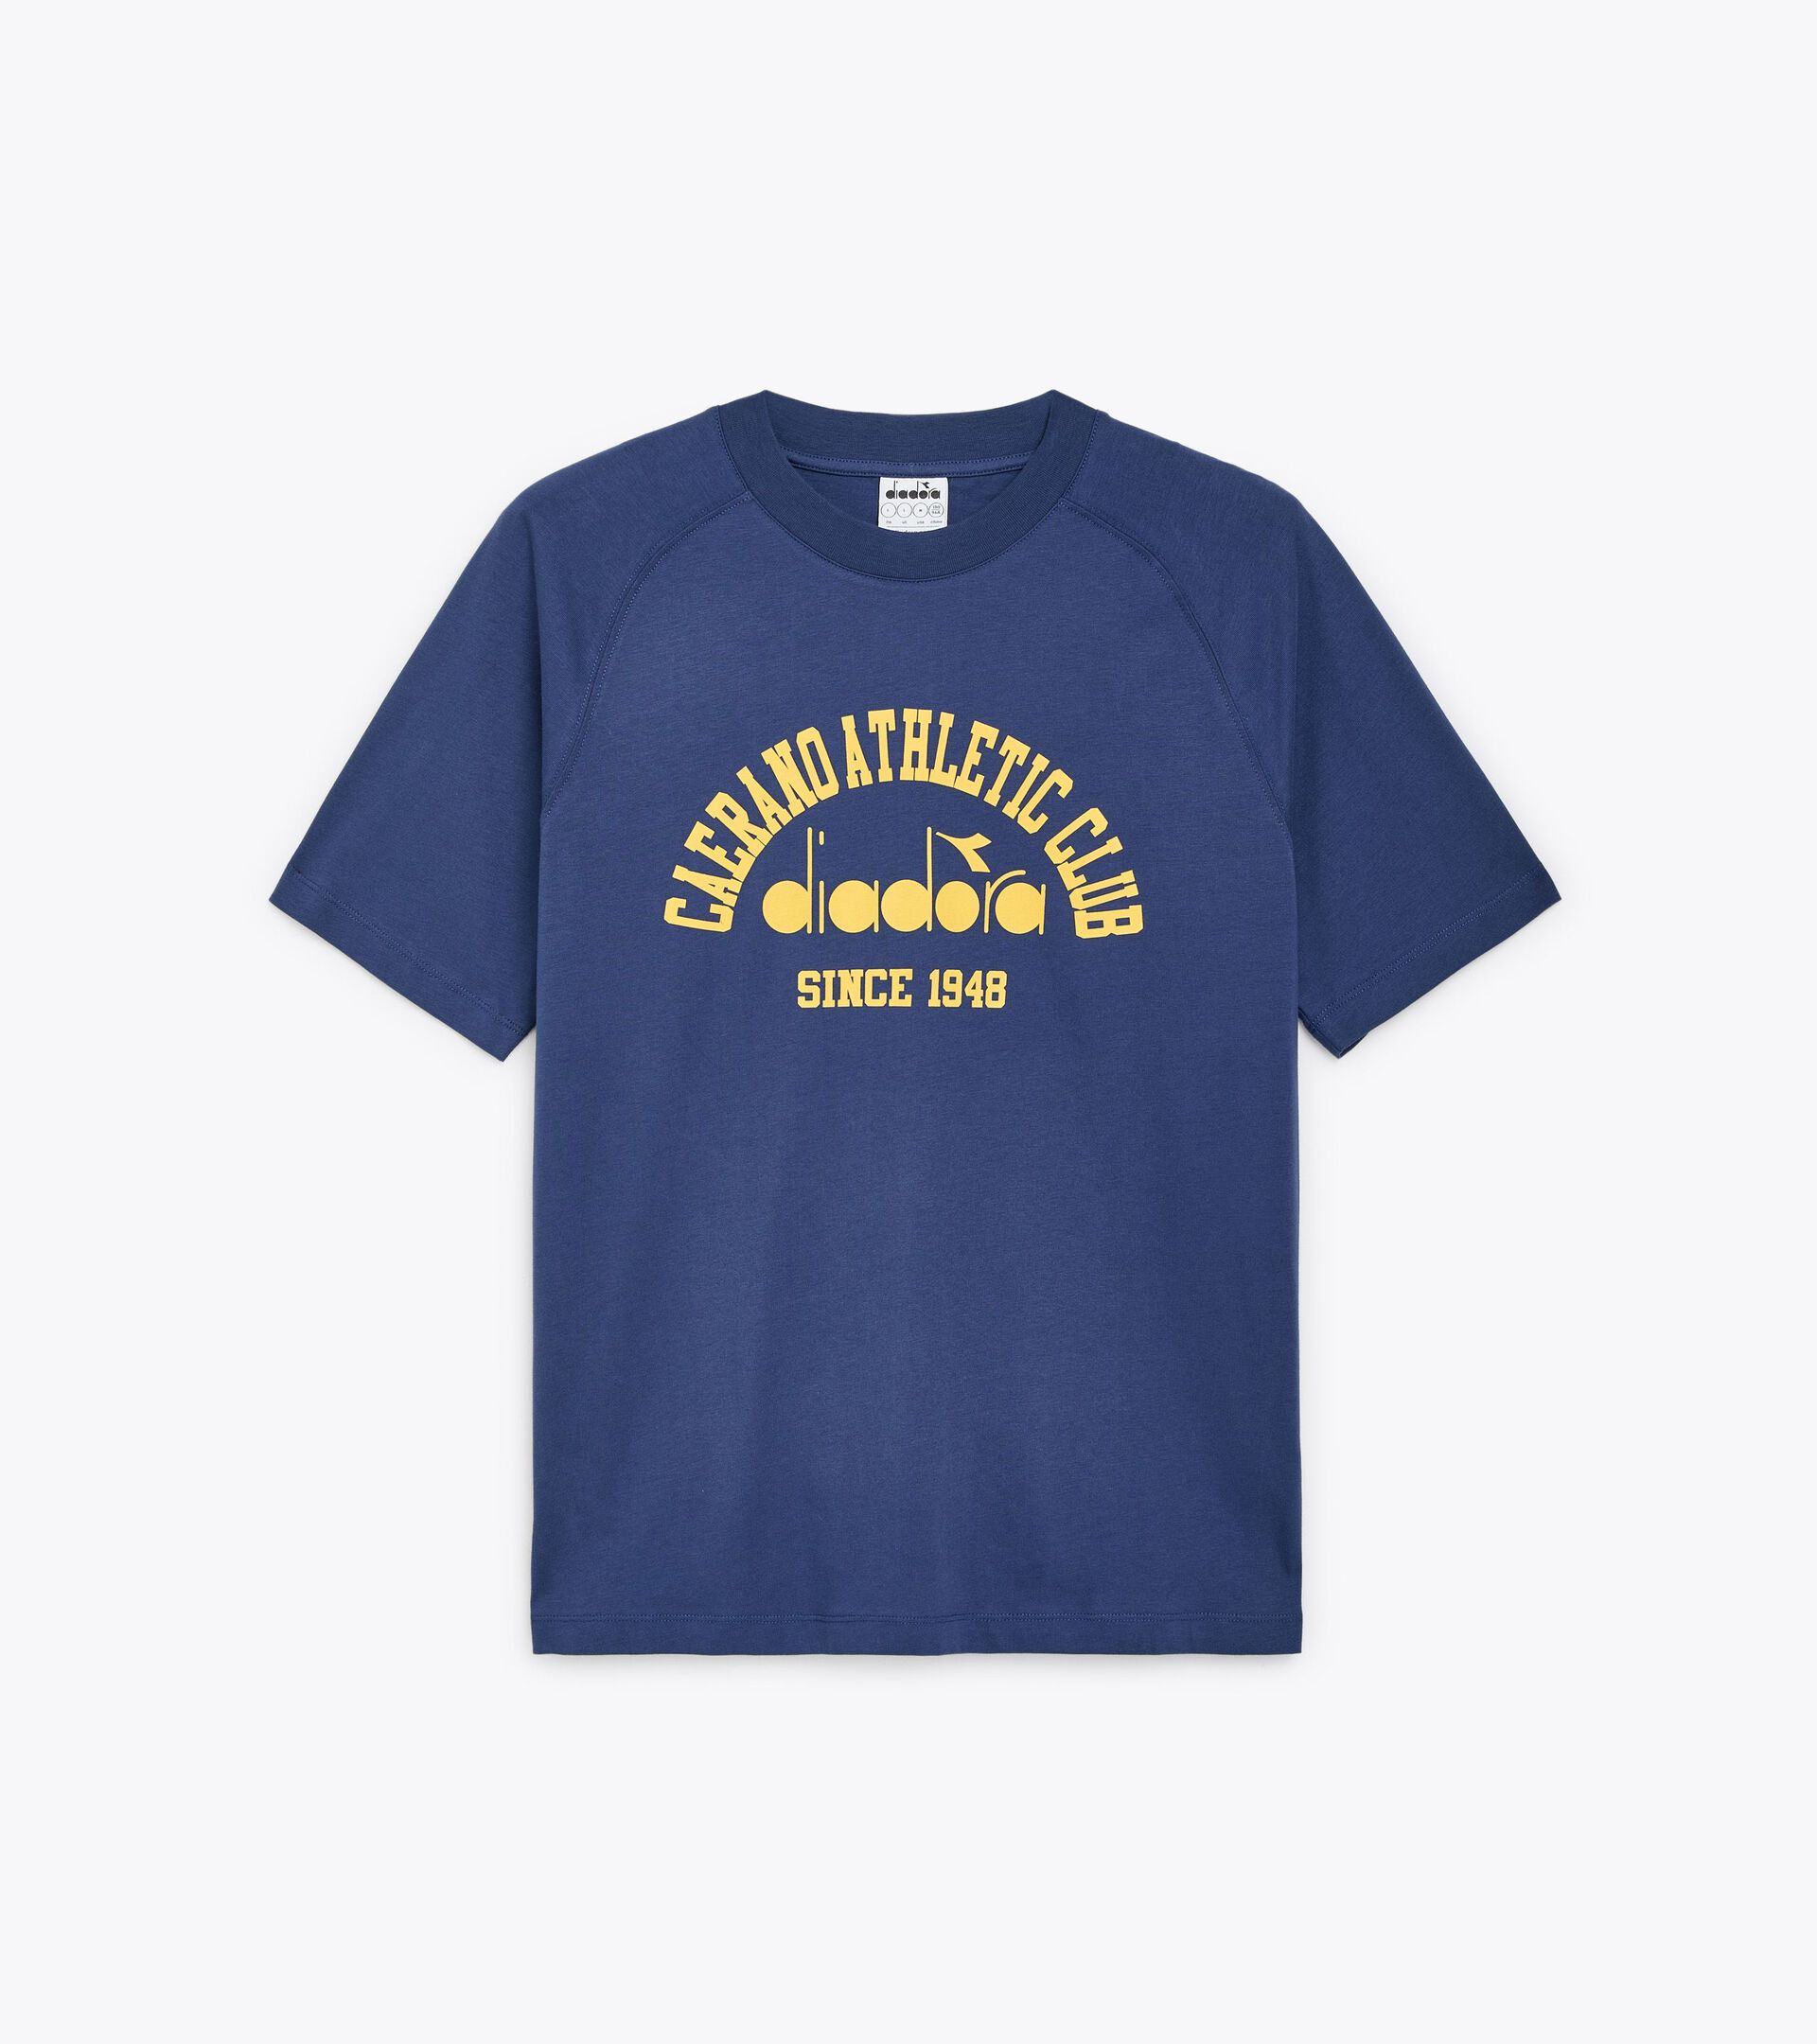 T-shirt - Gender Neutral T-SHIRT SS 1948 ATHL. CLUB OCEANA - Diadora